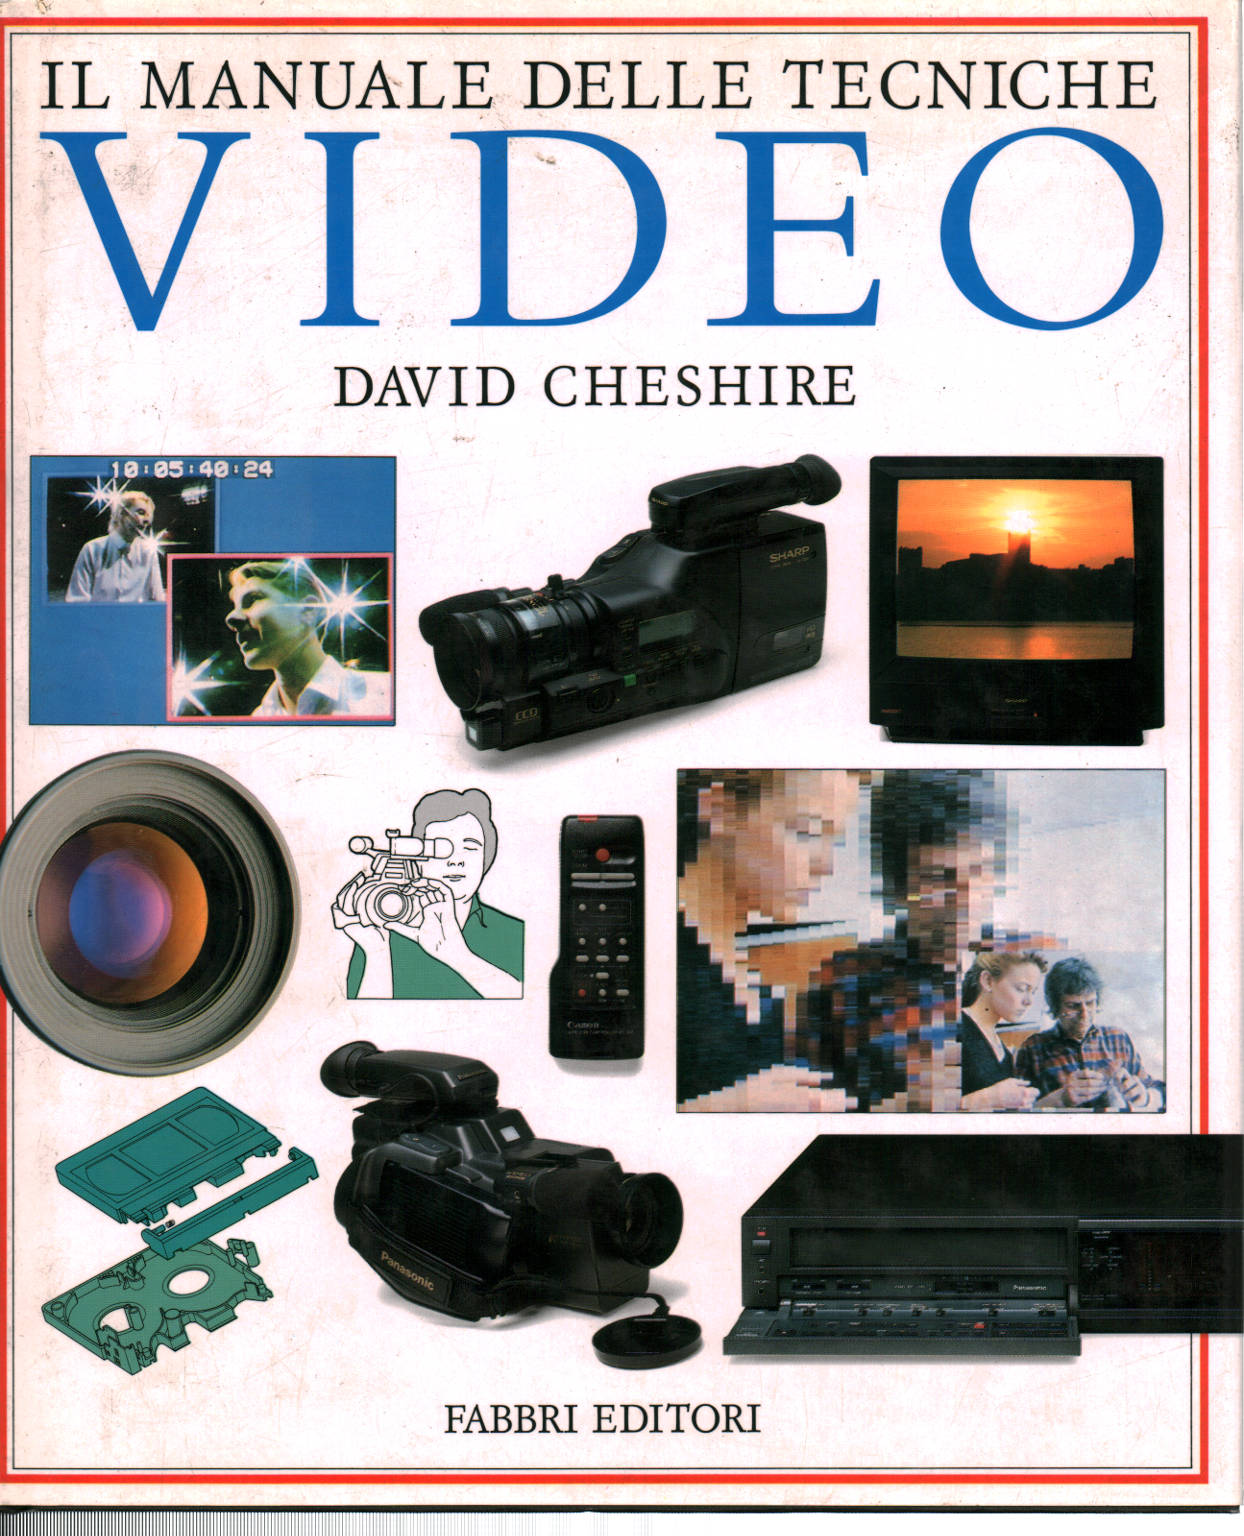 Il manuale delle tecniche video, David Cheshire